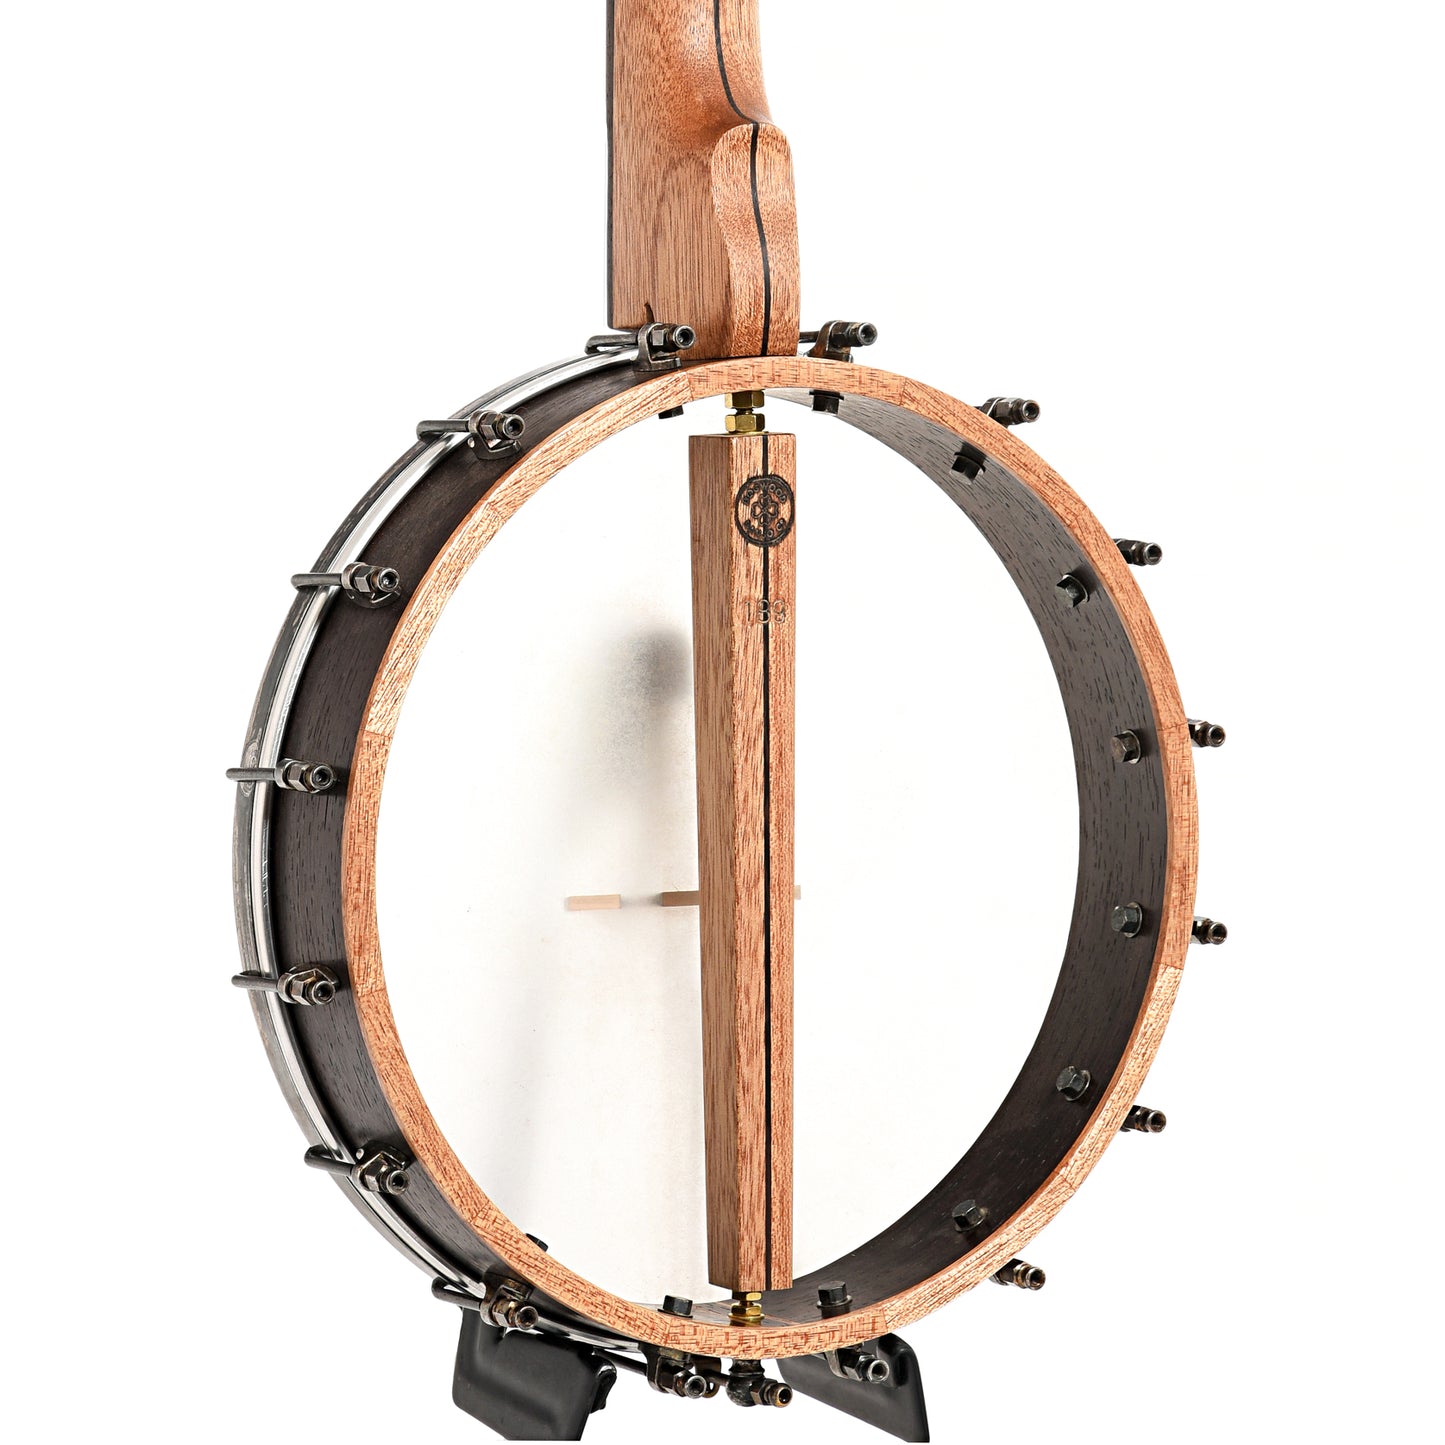 Image 11 of Dogwood Banjo Co. 12" Openback Banjo, No. 189, with Gigbag - SKU# DW189 : Product Type Open Back Banjos : Elderly Instruments